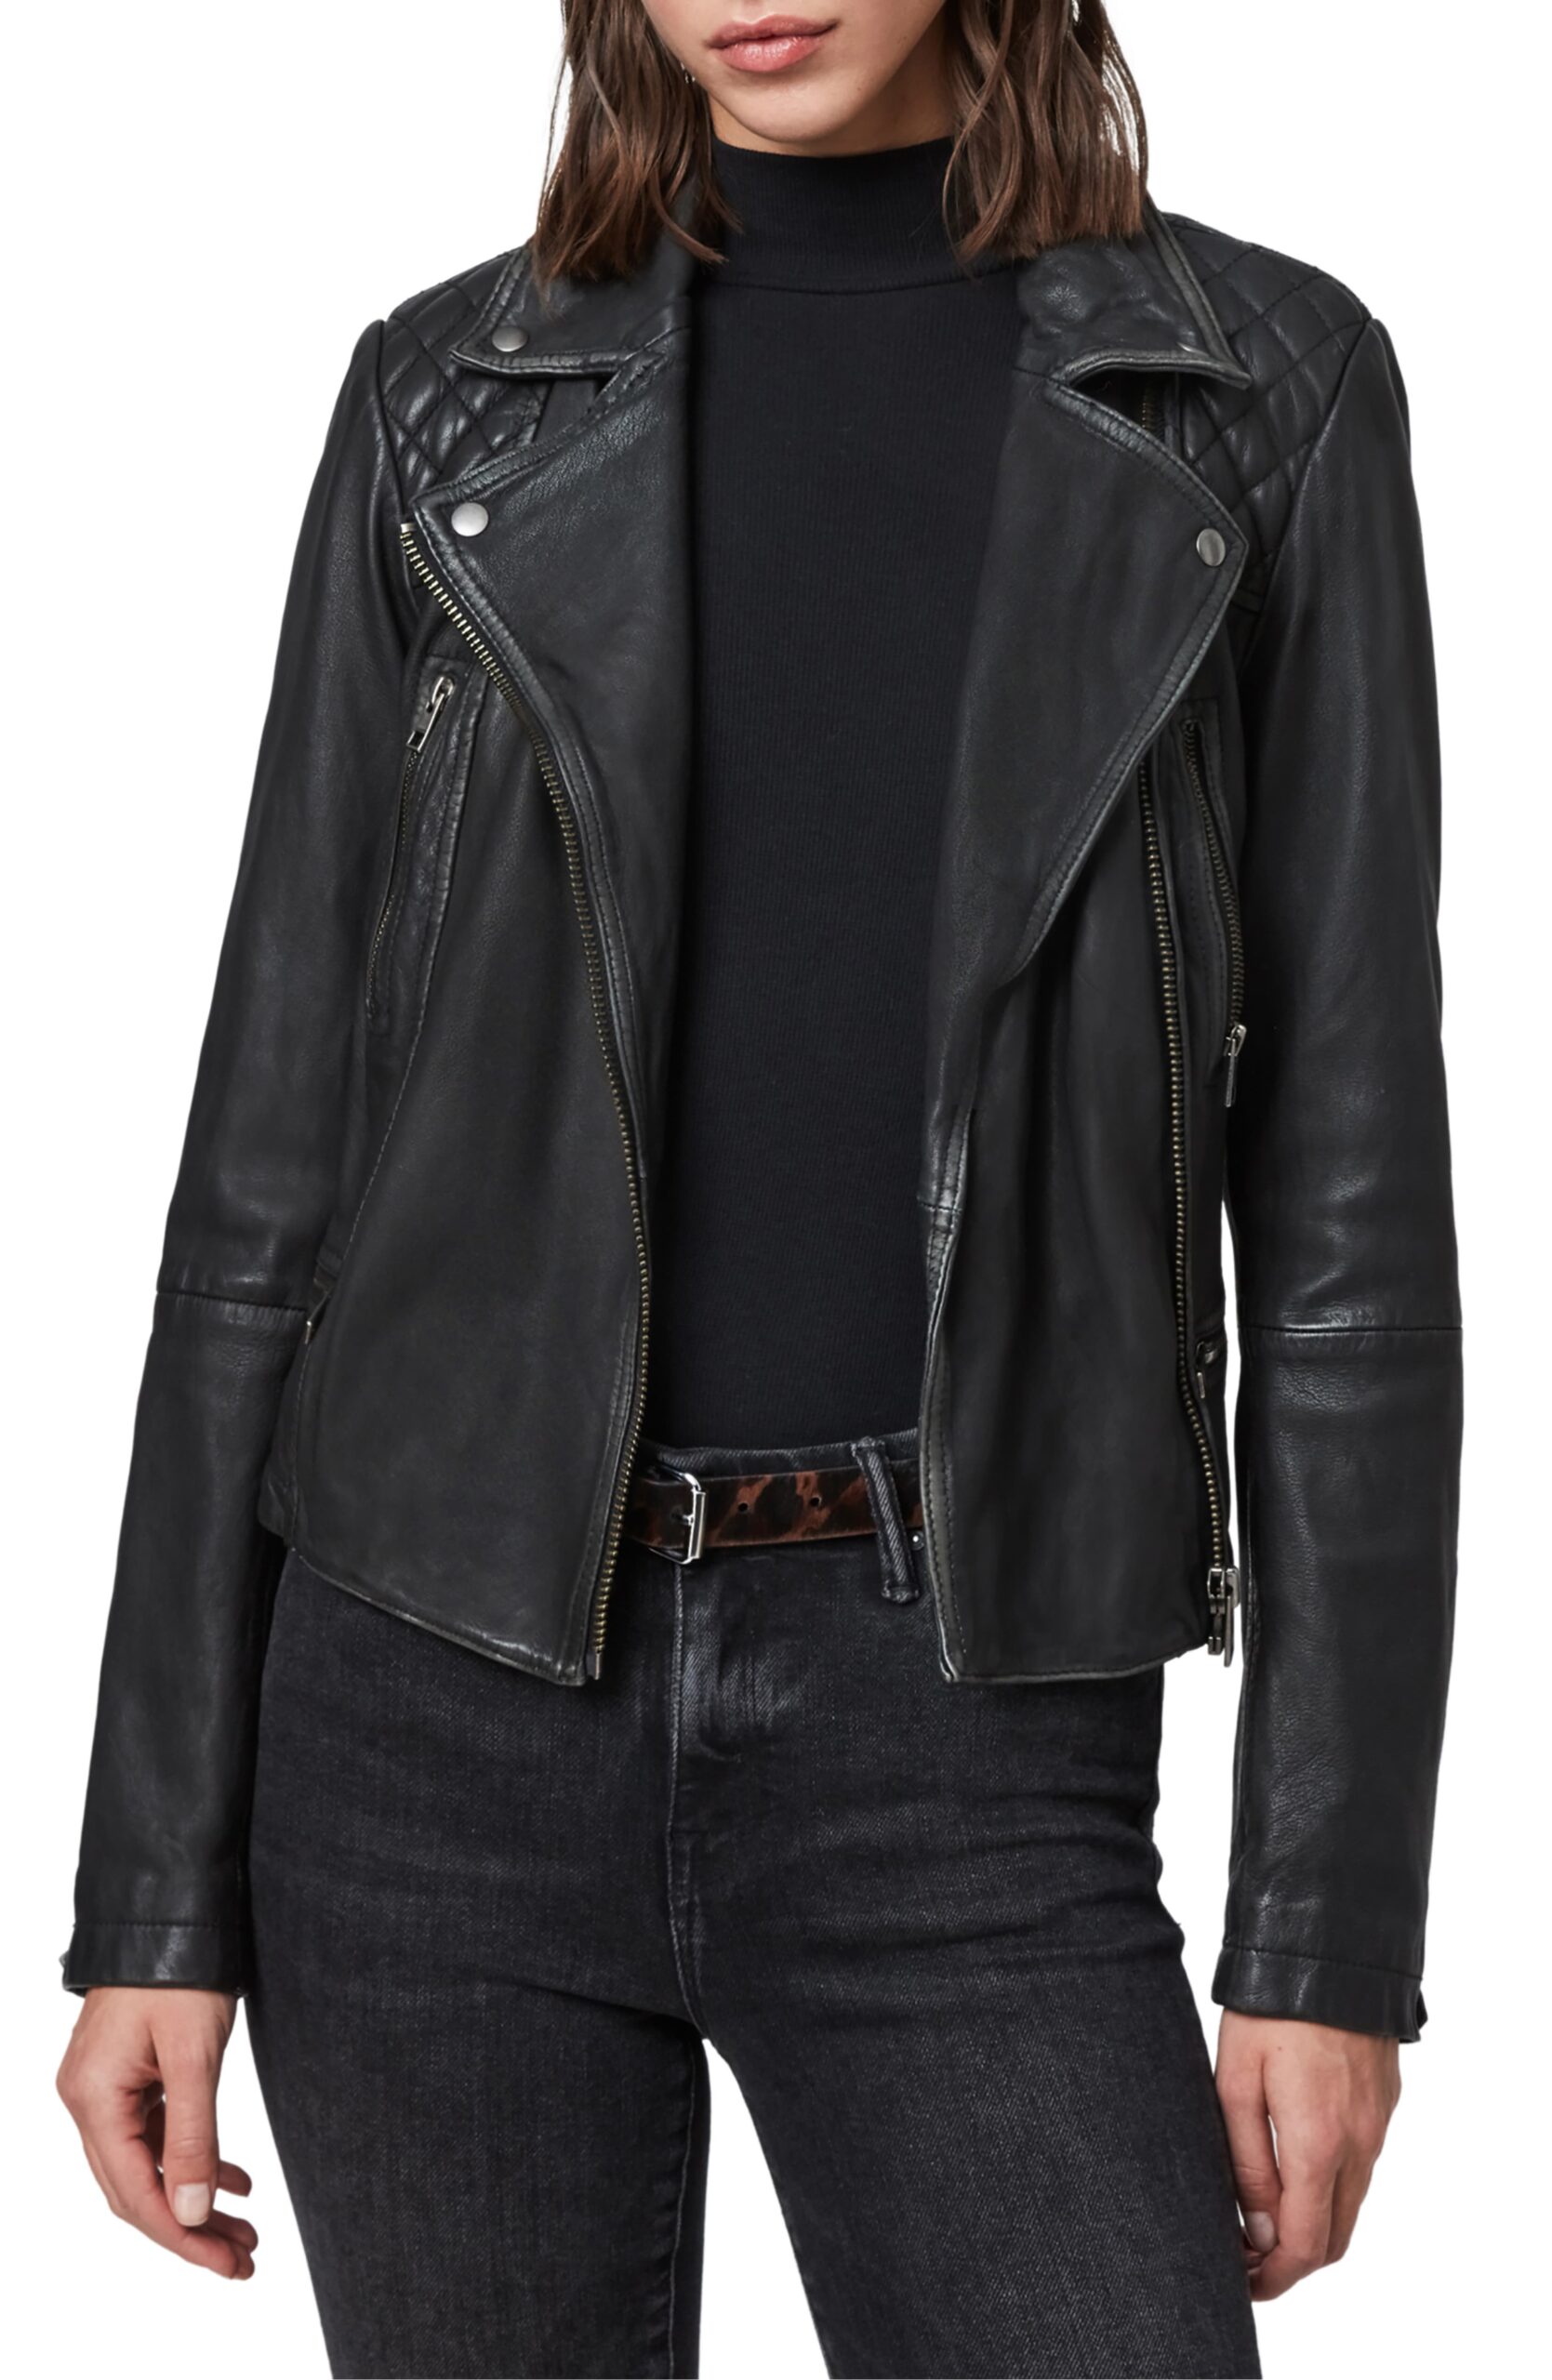 Kelsey Weier’s Leather Jacket